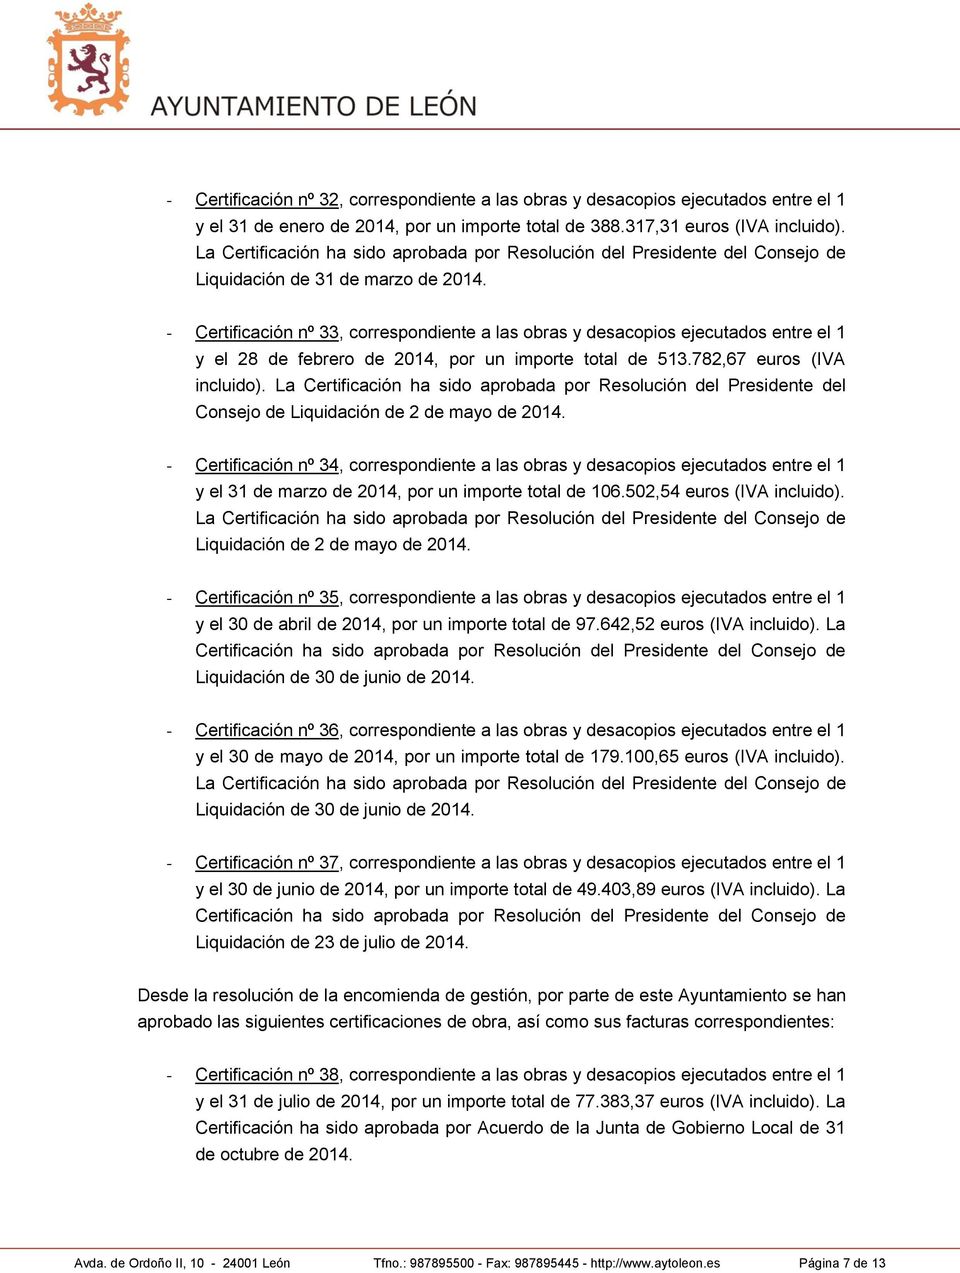 - Certificación nº 33, correspondiente a las obras y desacopios ejecutados entre el 1 y el 28 de febrero de 2014, por un importe total de 513.782,67 euros (IVA incluido).